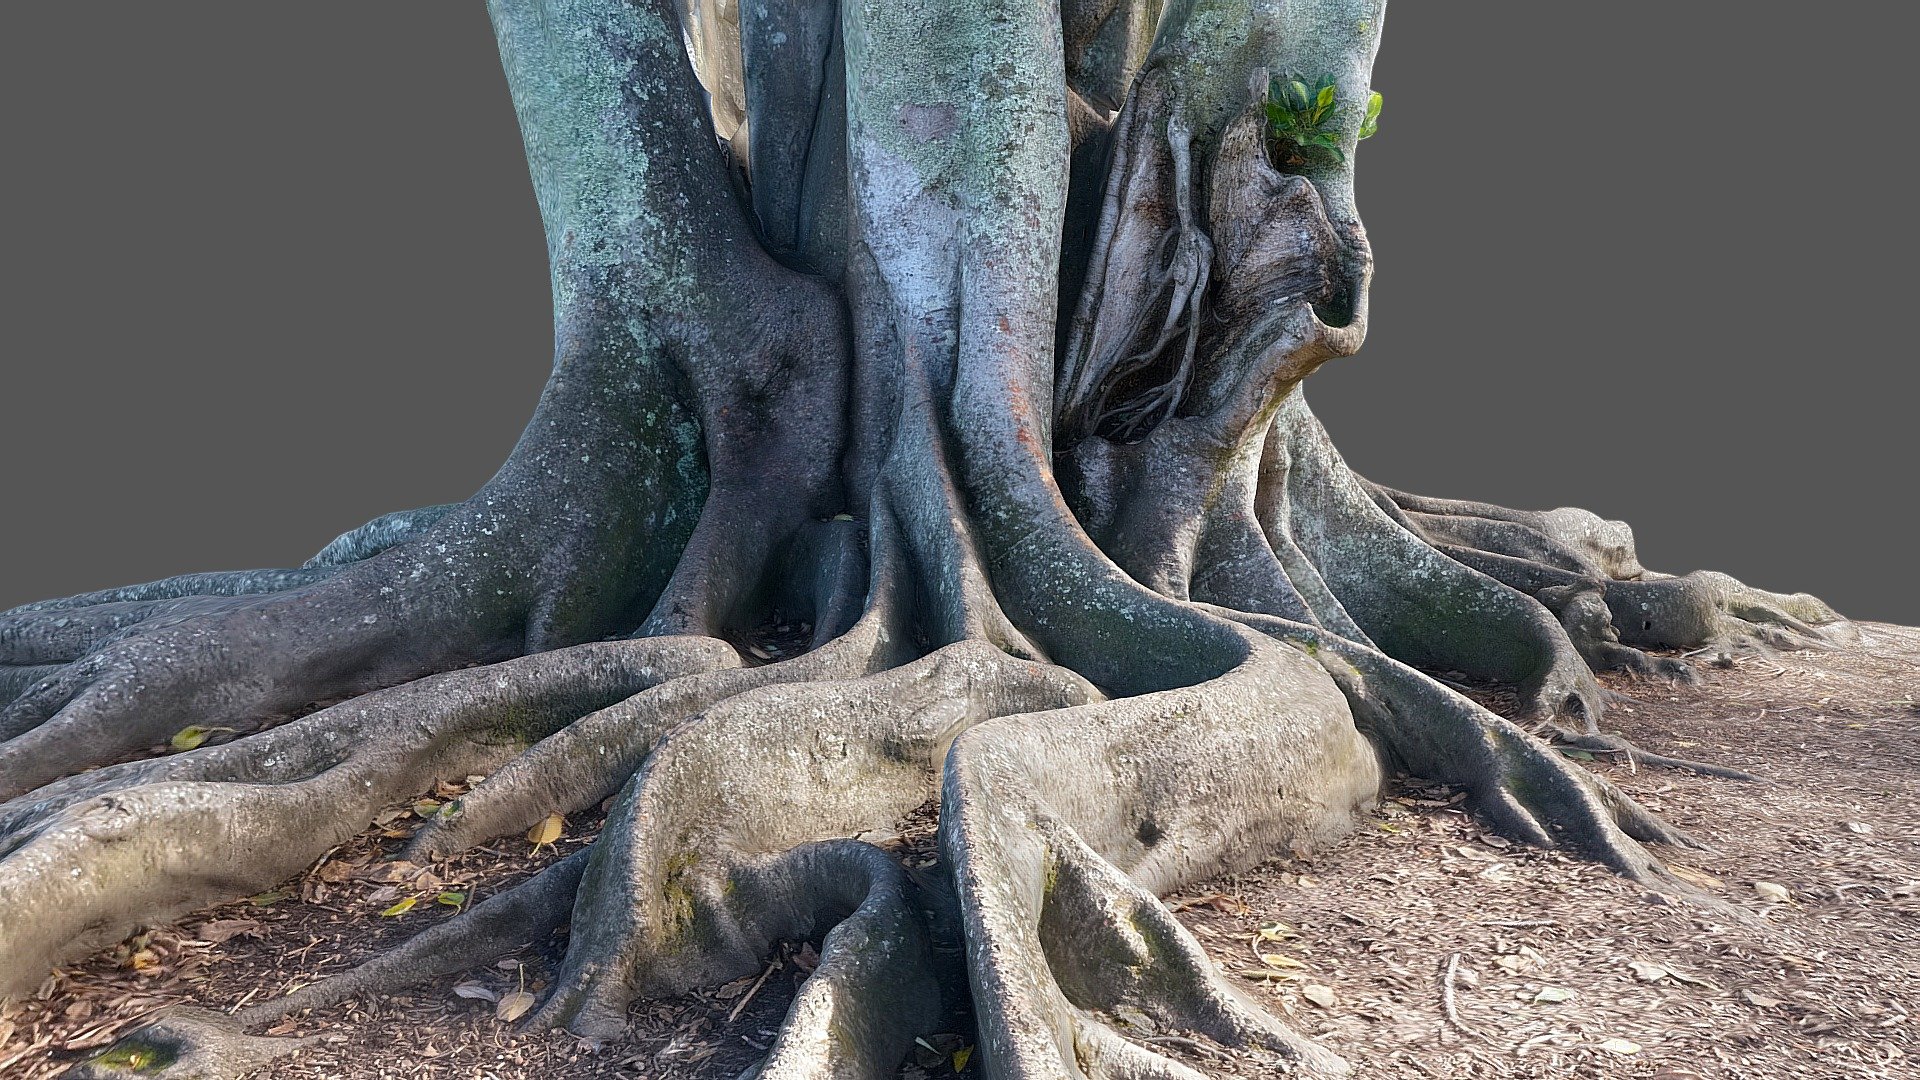 Moreton Bay Fig Tree 2